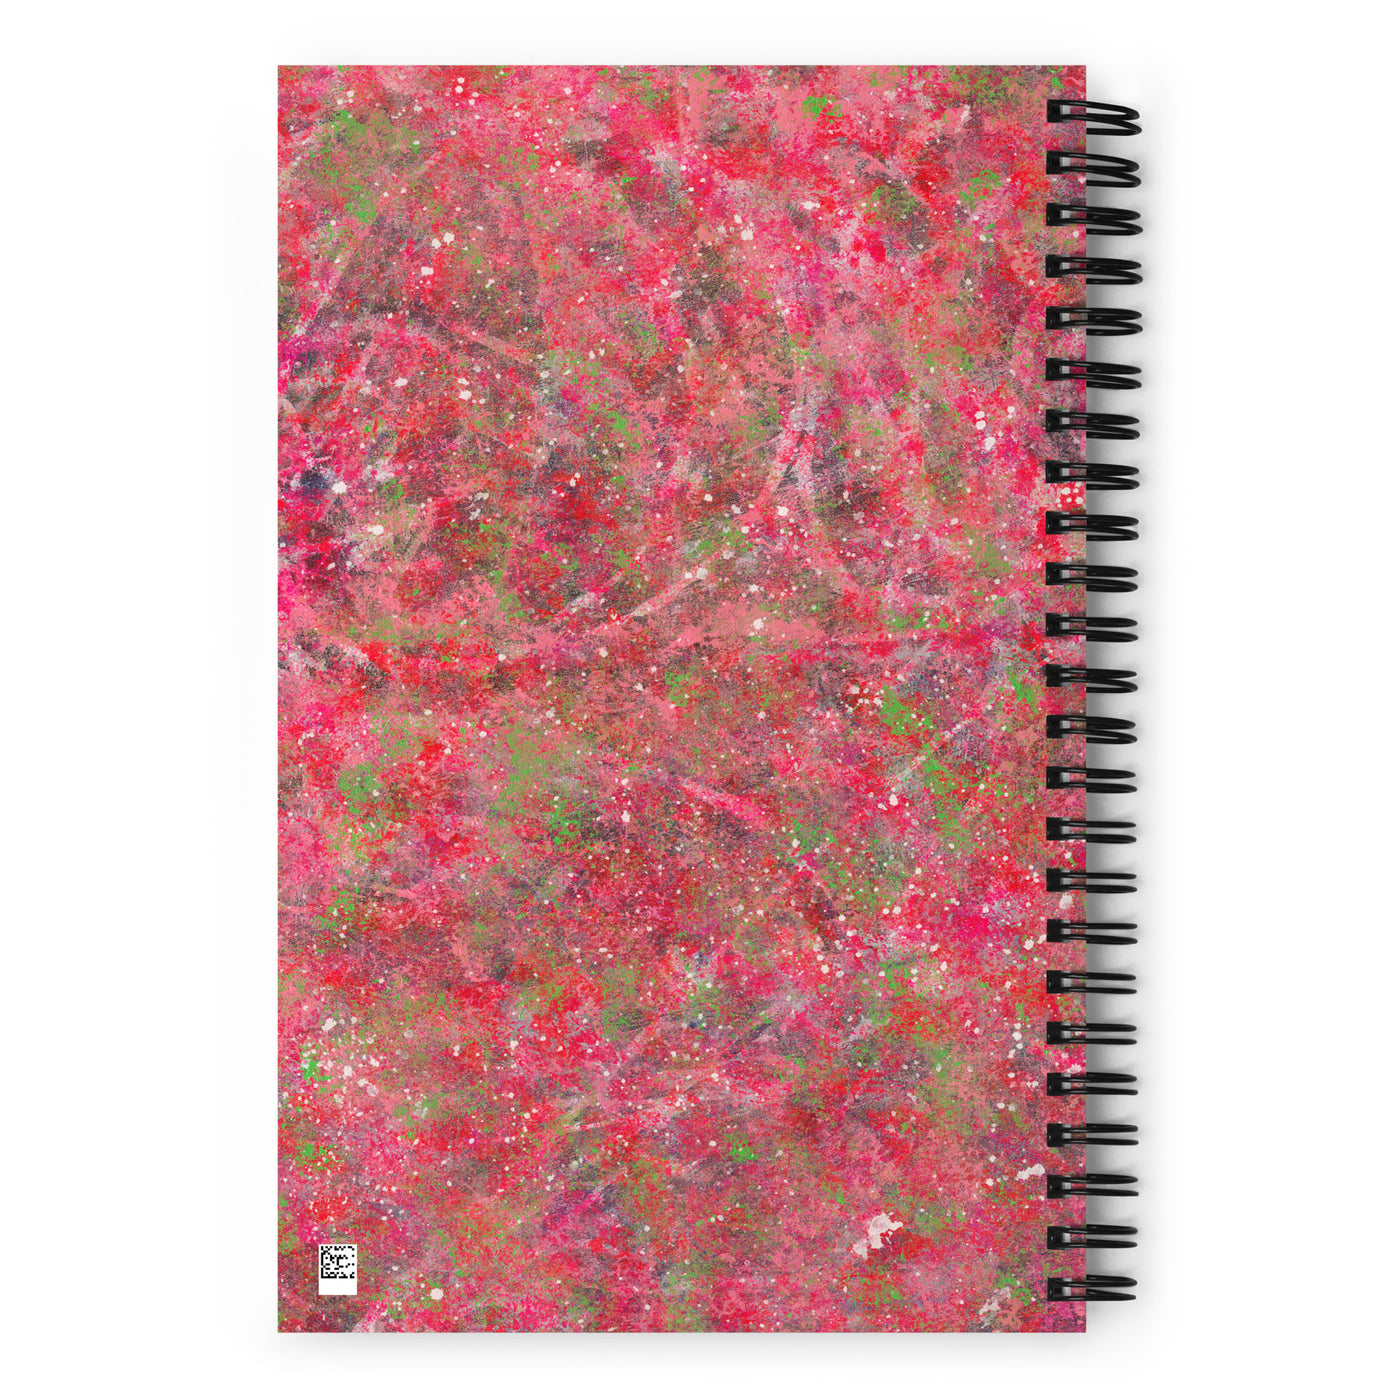 Triple Threat Art Spiral Notebook